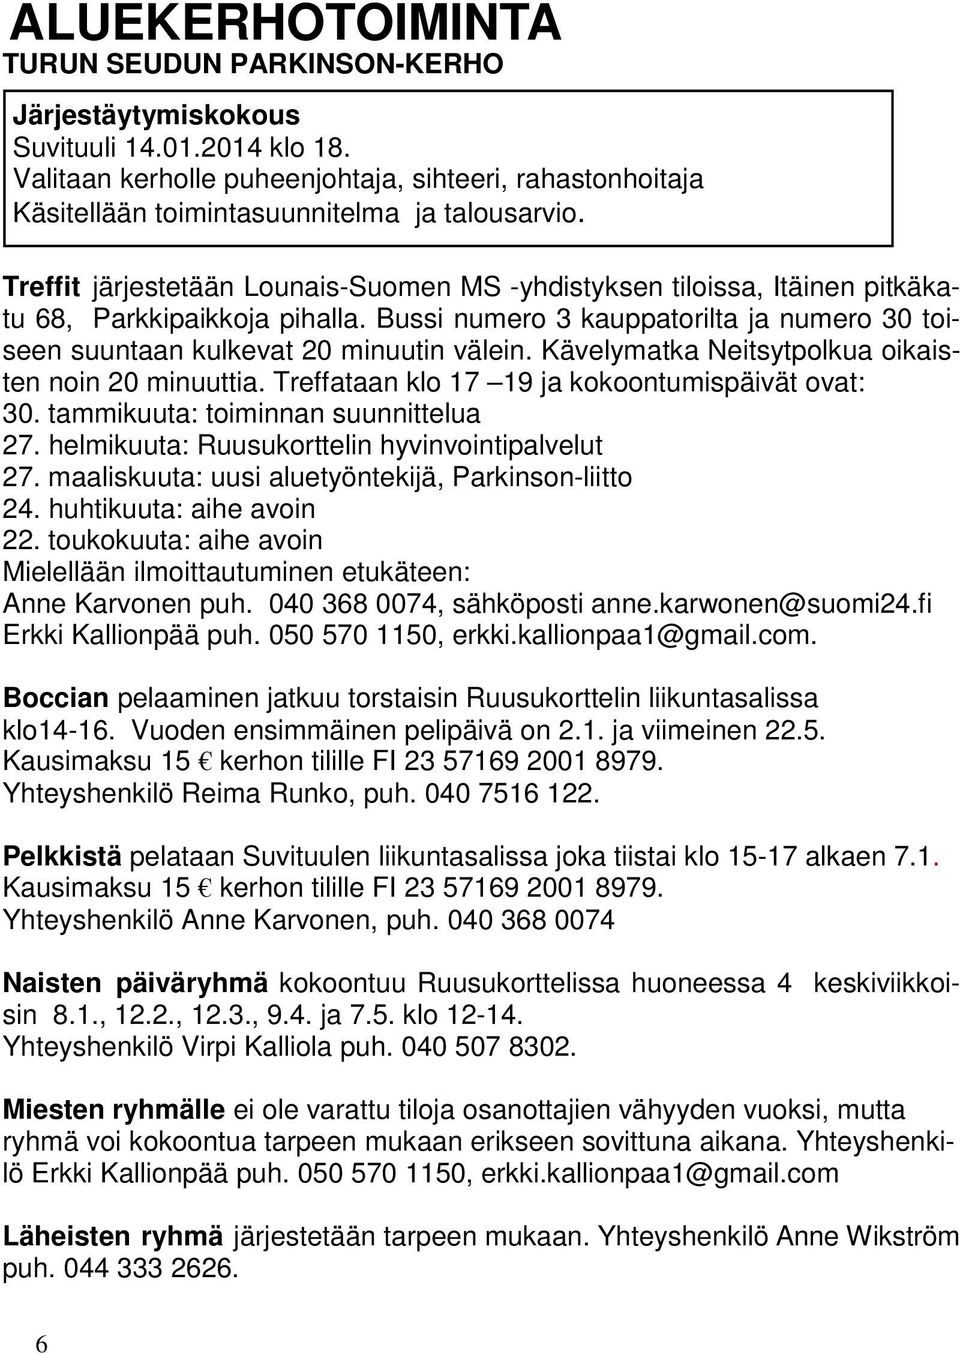 Treffit järjestetään Lounais-Suomen MS -yhdistyksen tiloissa, Itäinen pitkäkatu 68, Parkkipaikkoja pihalla. Bussi numero 3 kauppatorilta ja numero 30 toiseen suuntaan kulkevat 20 minuutin välein.